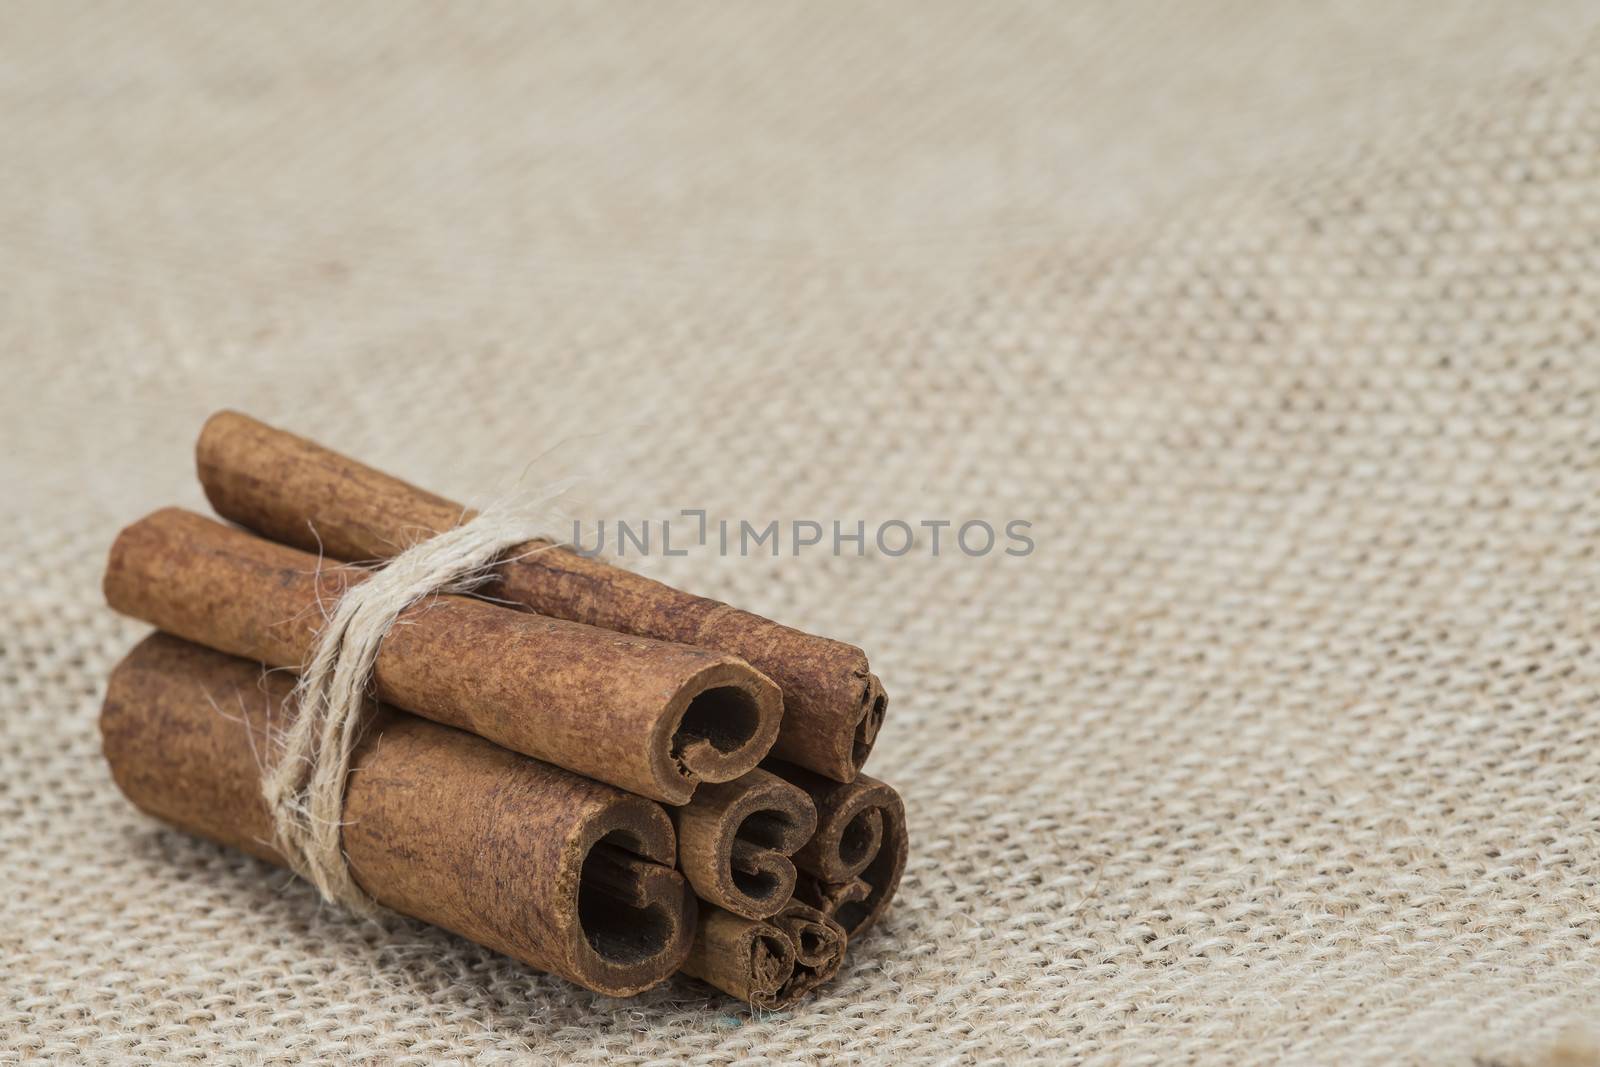 Cinnamon sticks on a piece of burlap